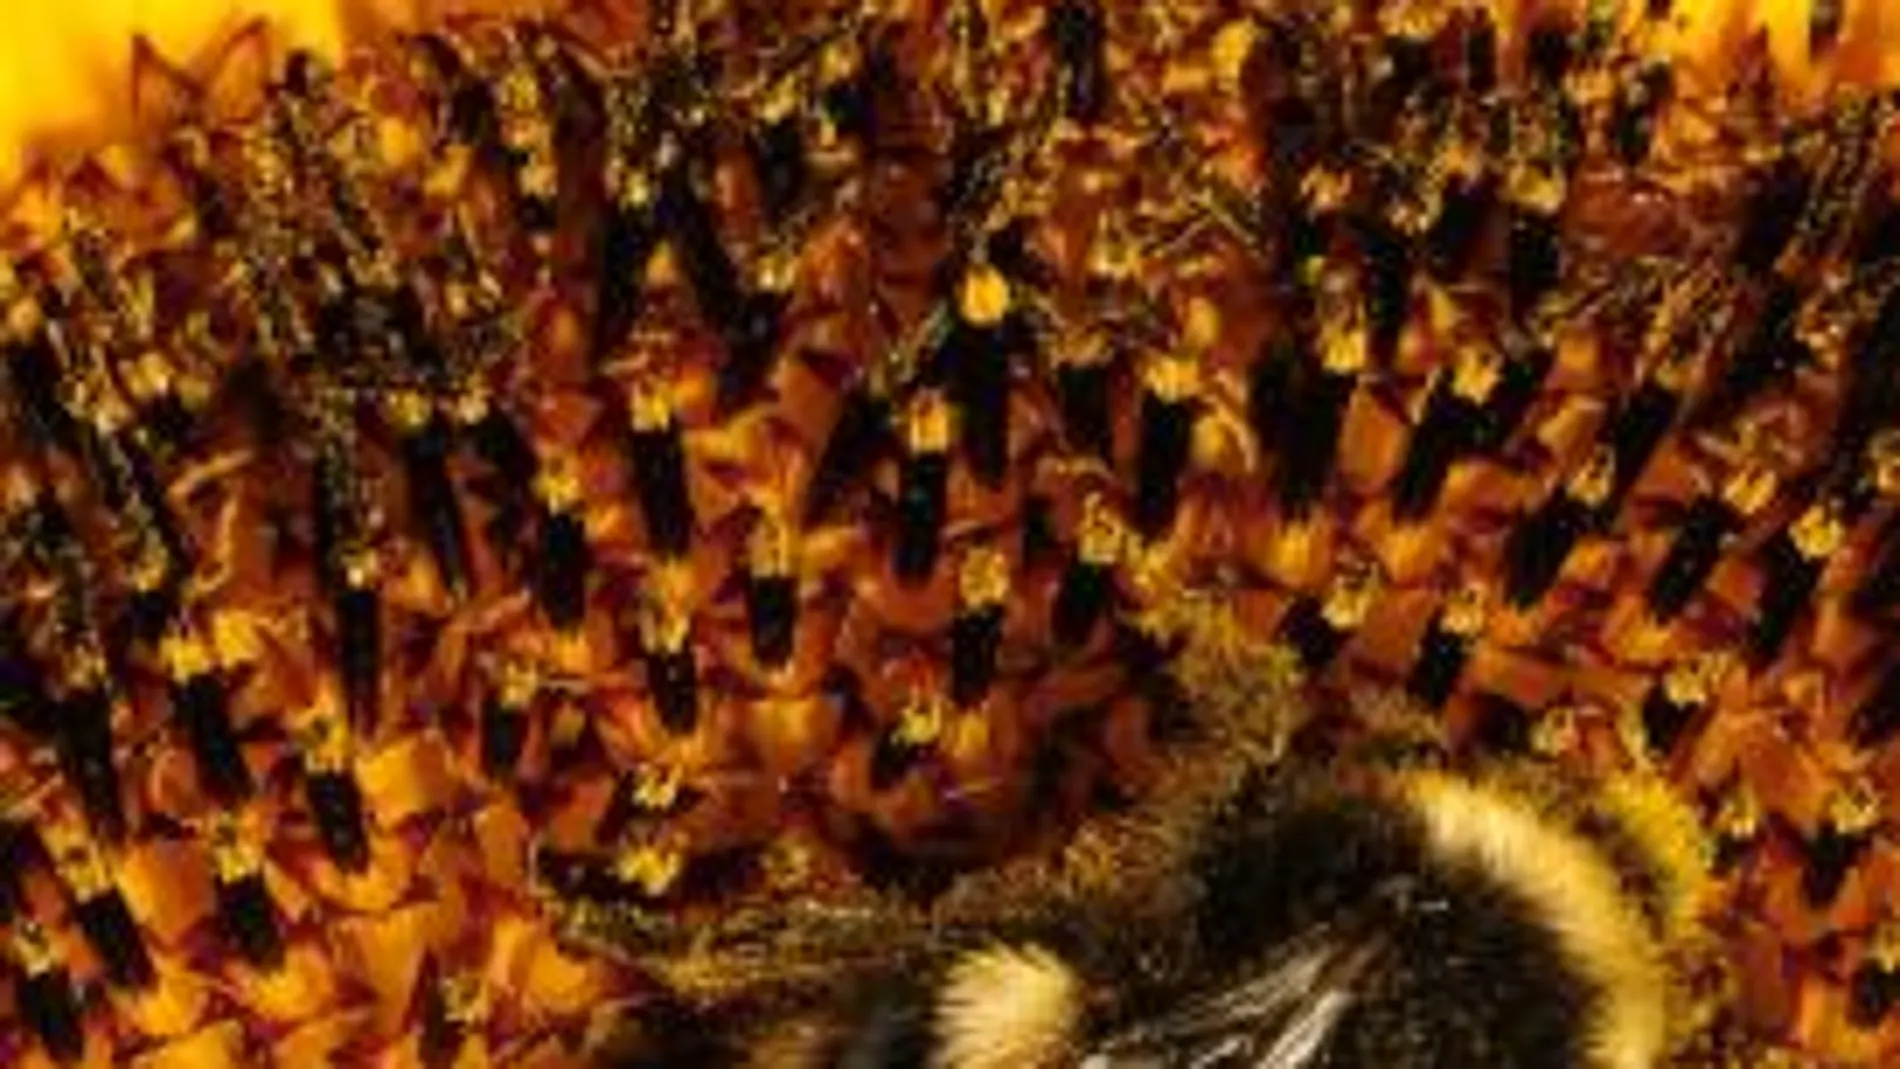 Las abejas disminuyen por los insecticidas y la contaminación